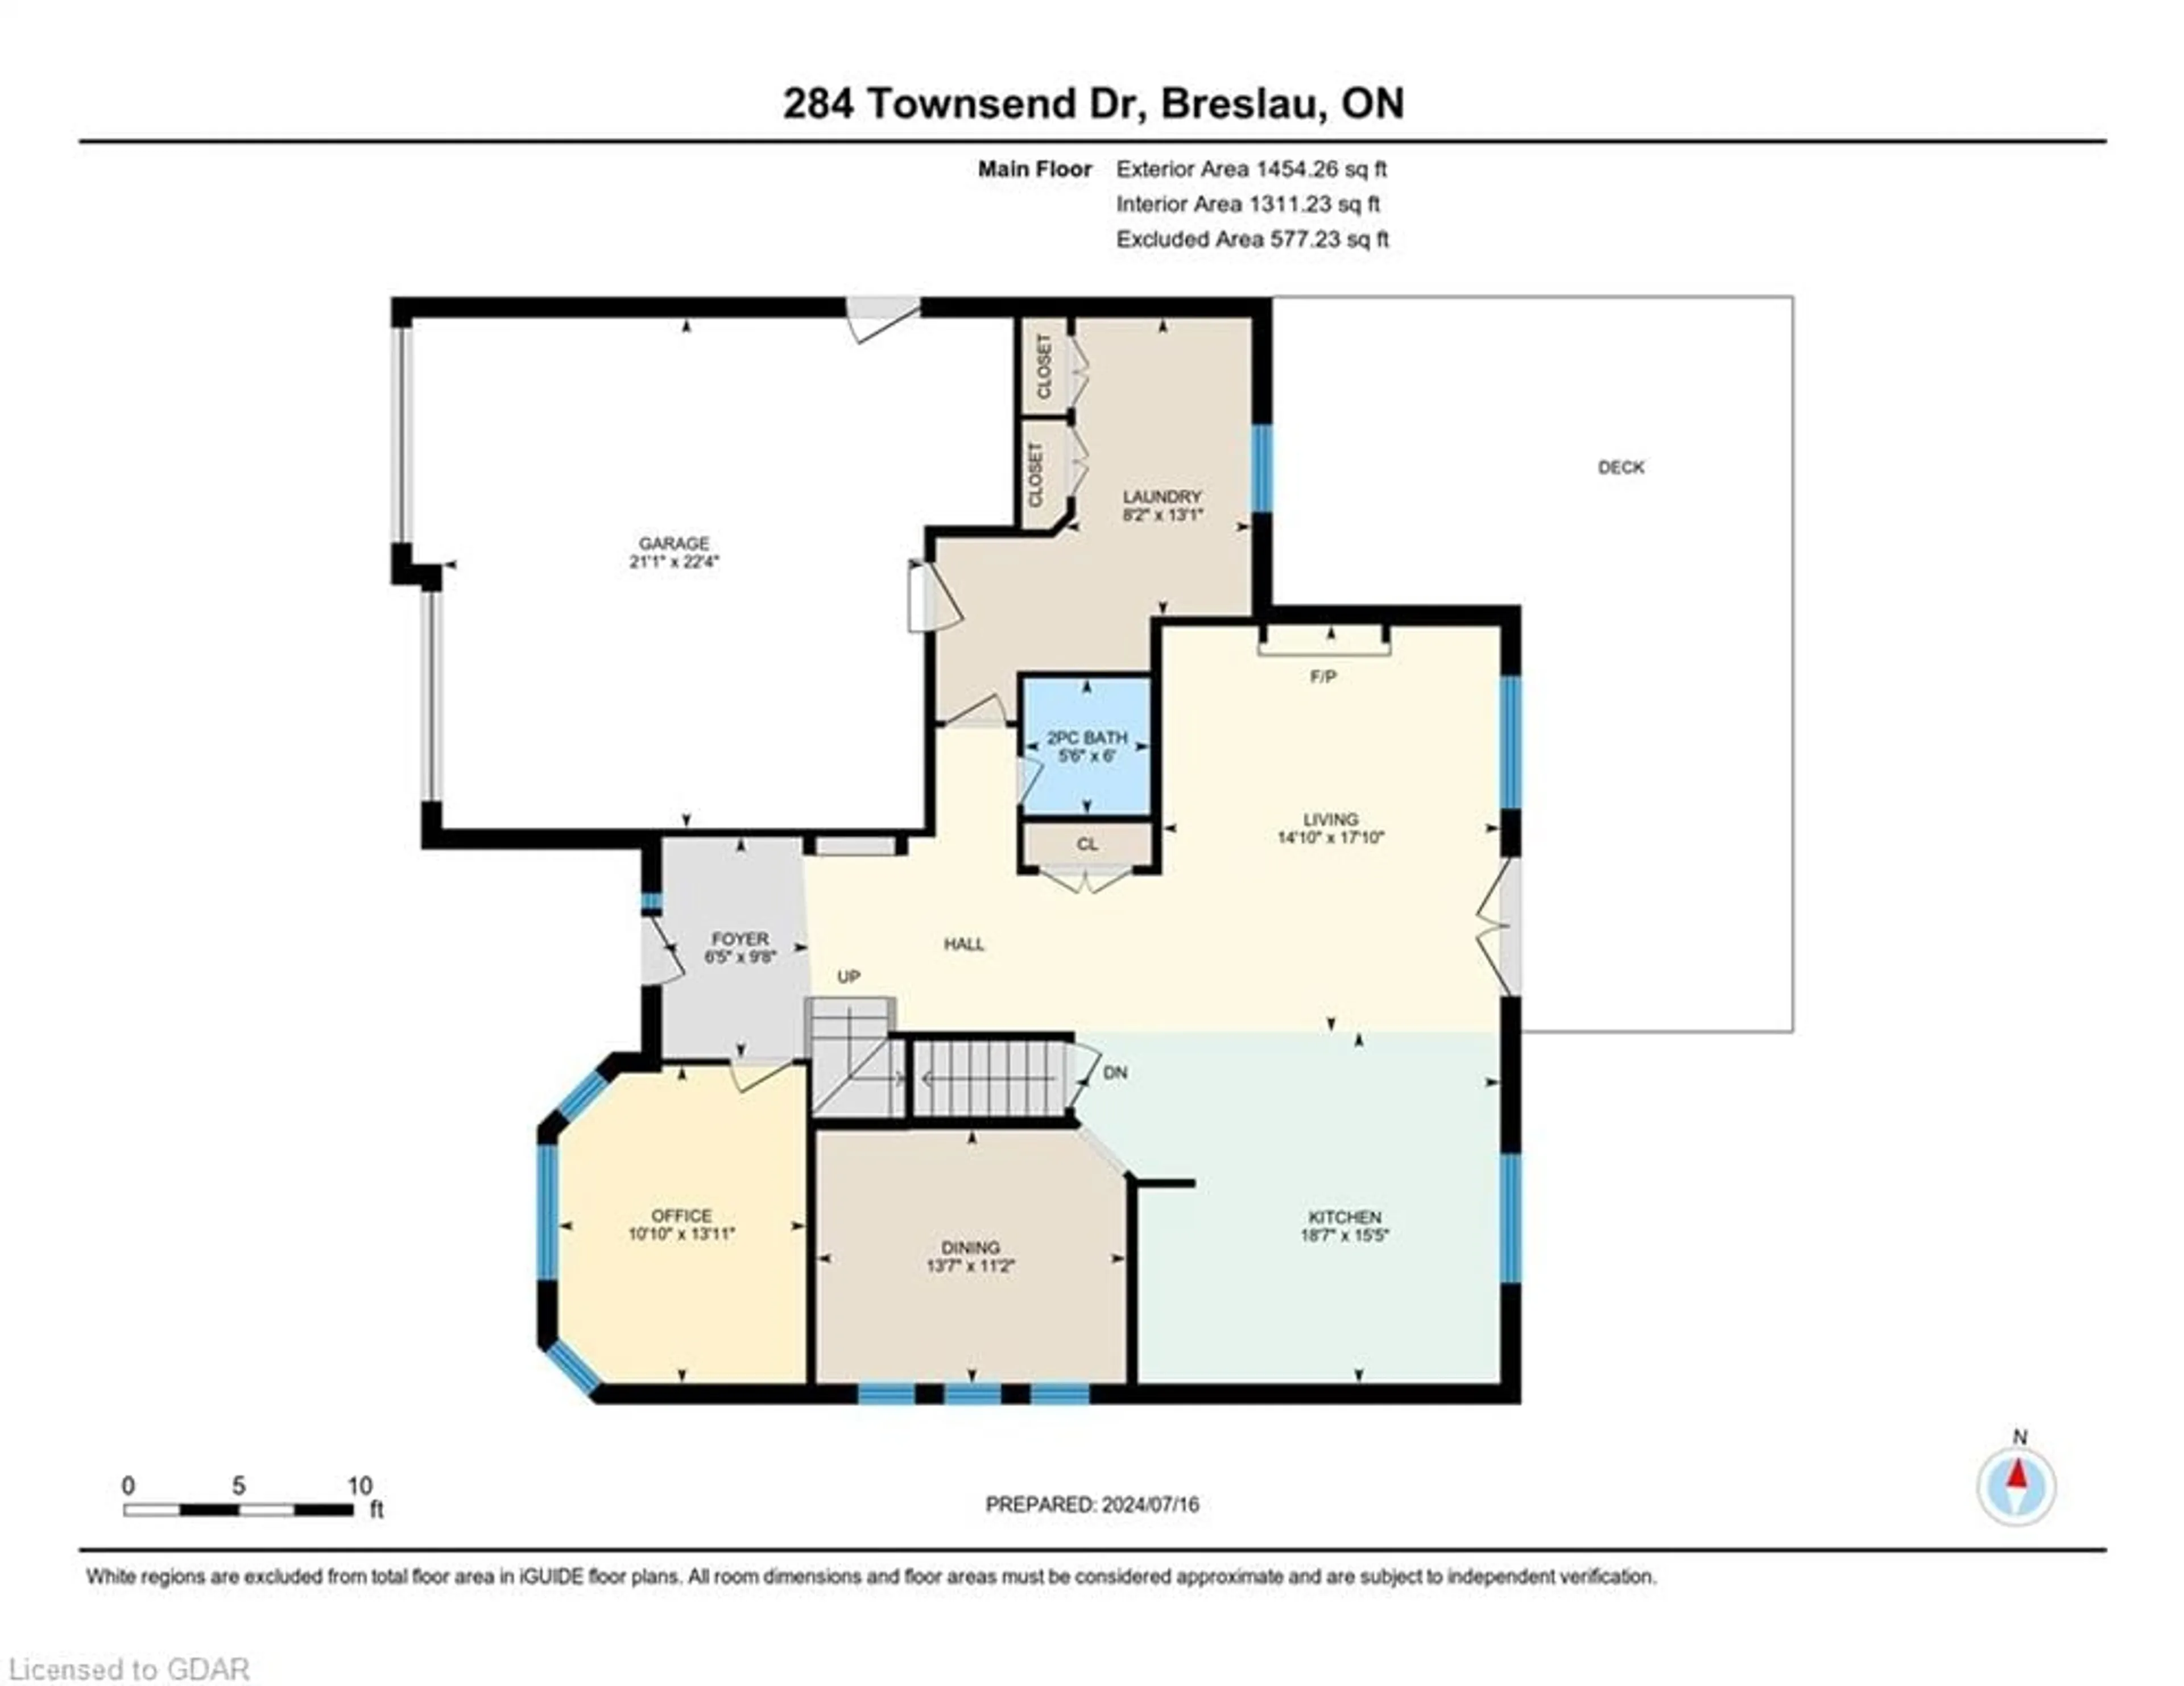 Floor plan for 284 Townsend Dr, Breslau Ontario N0B 1M0